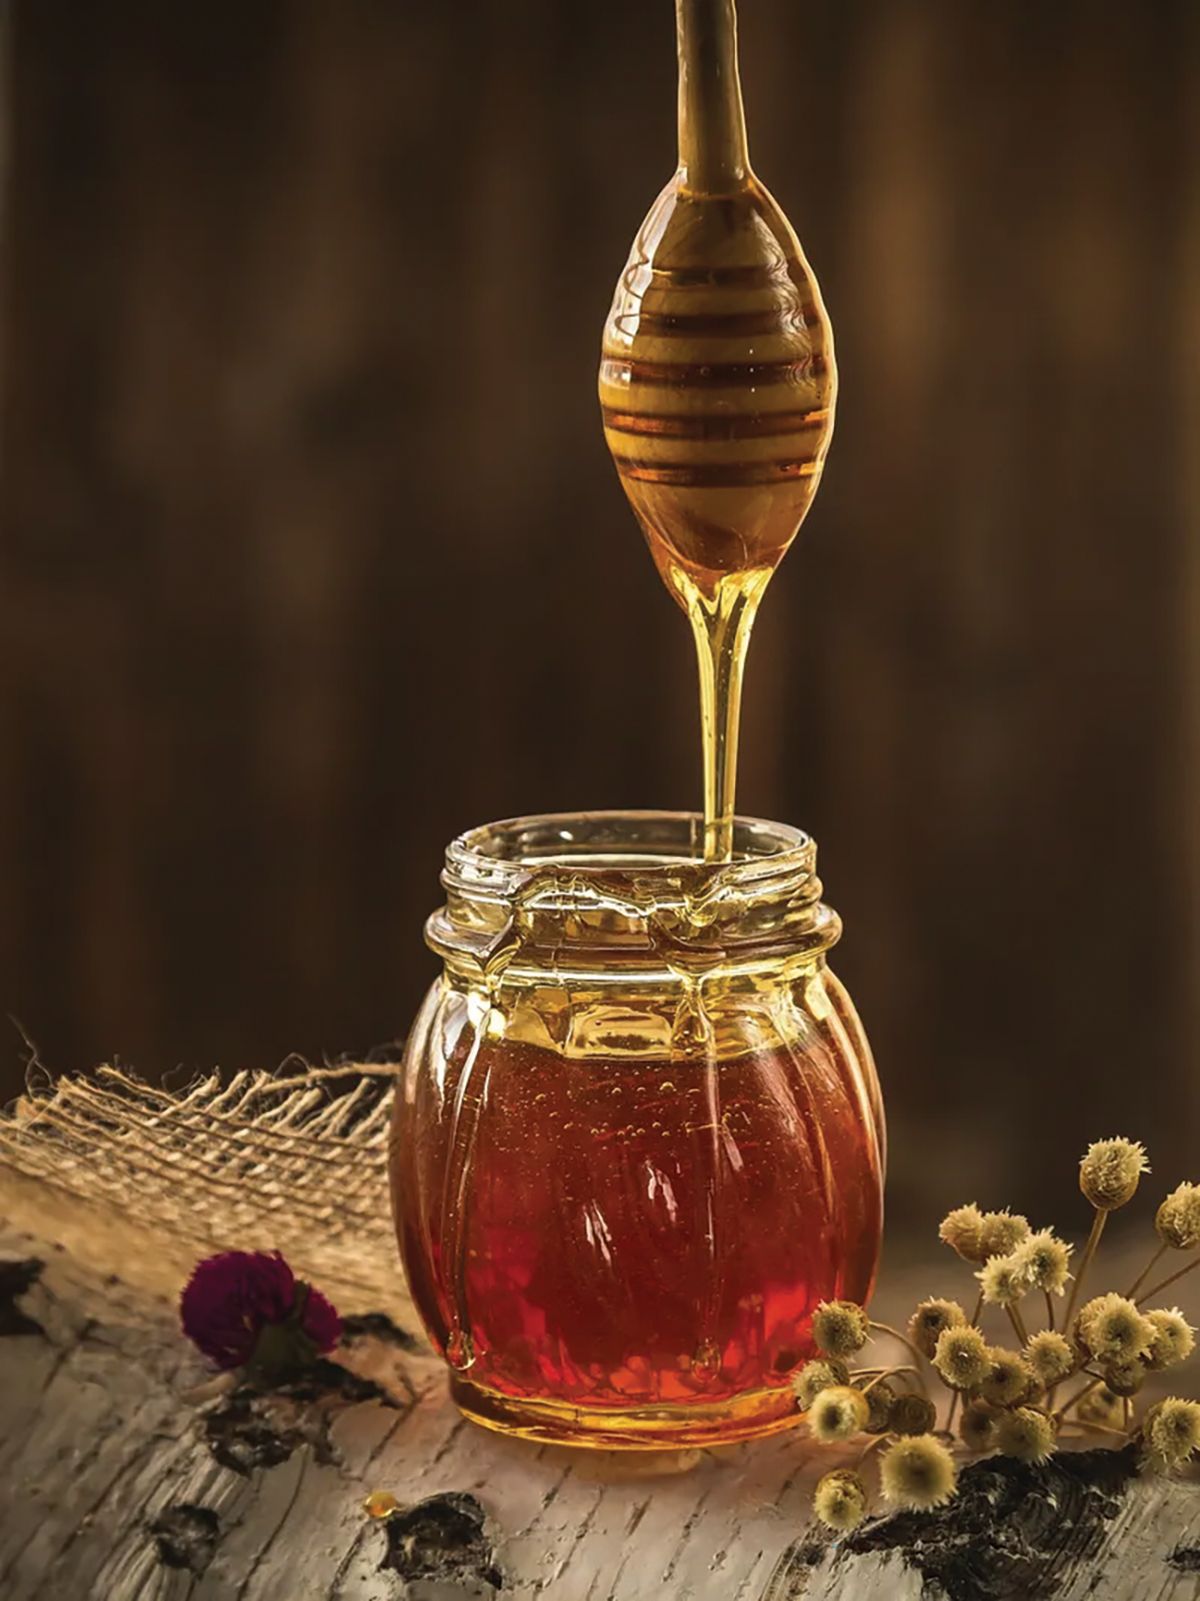 Mierea - valoare nutriţională și beneficii pentru sănătate